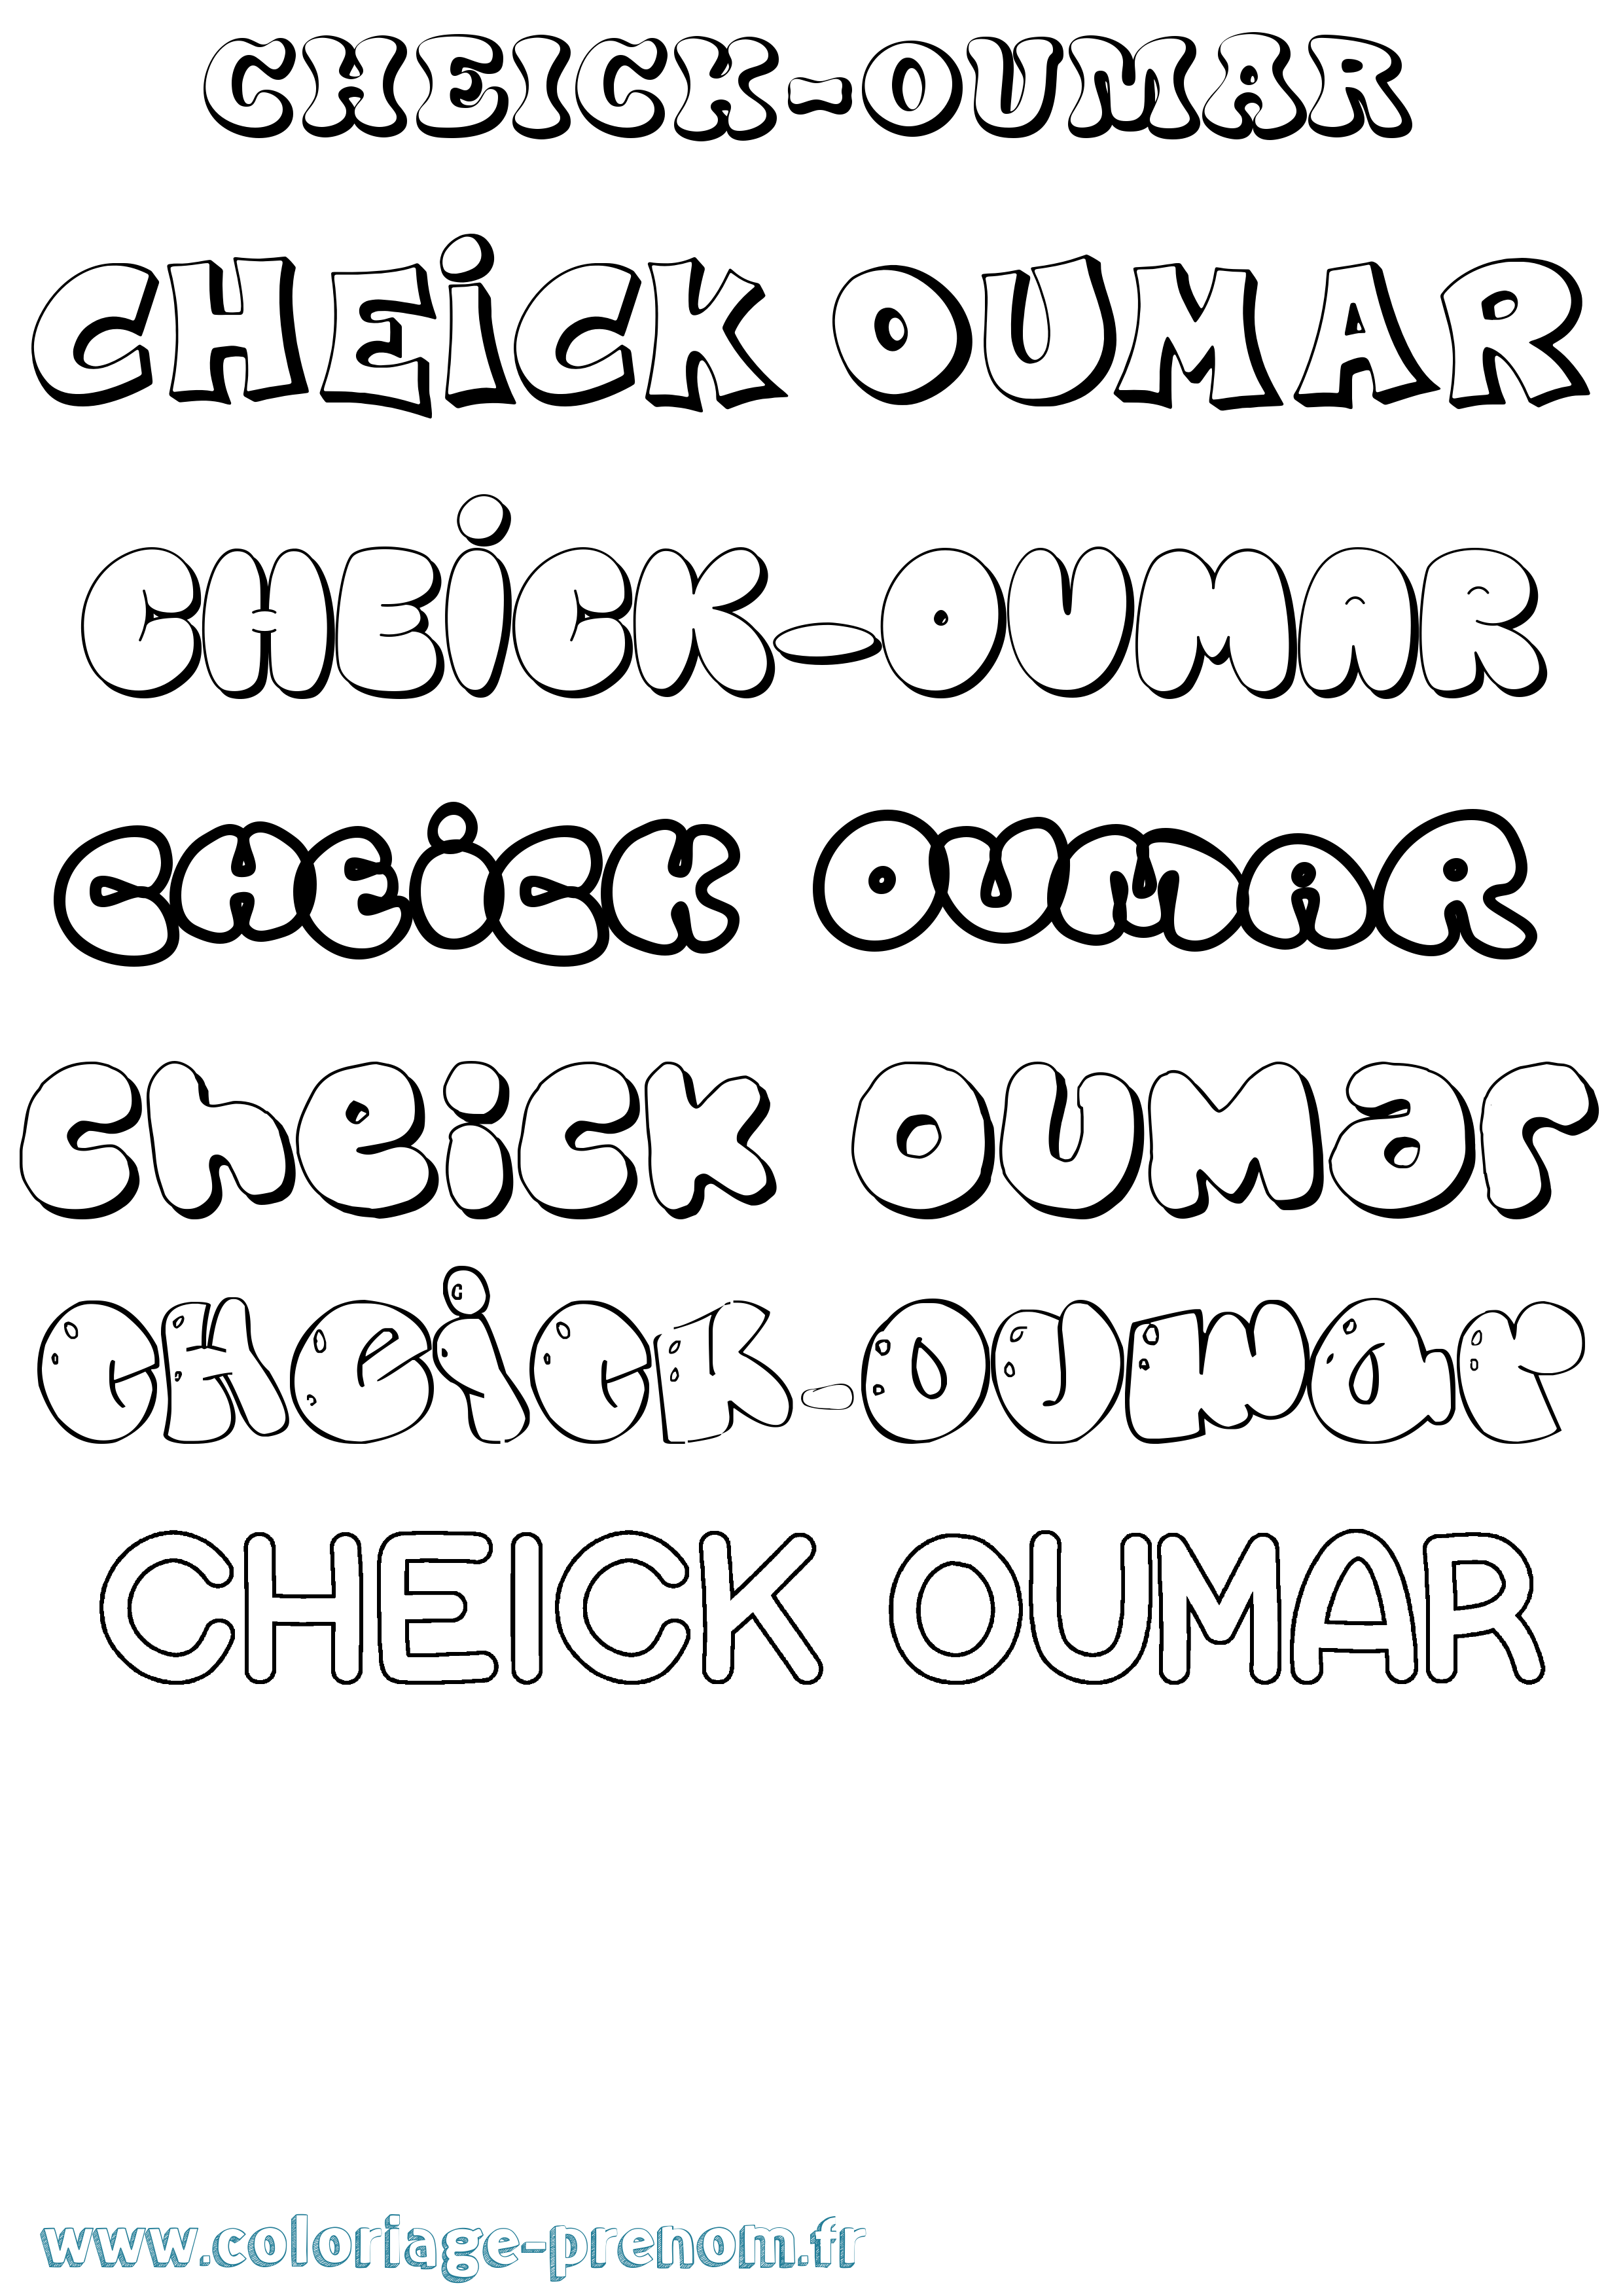 Coloriage prénom Cheick-Oumar